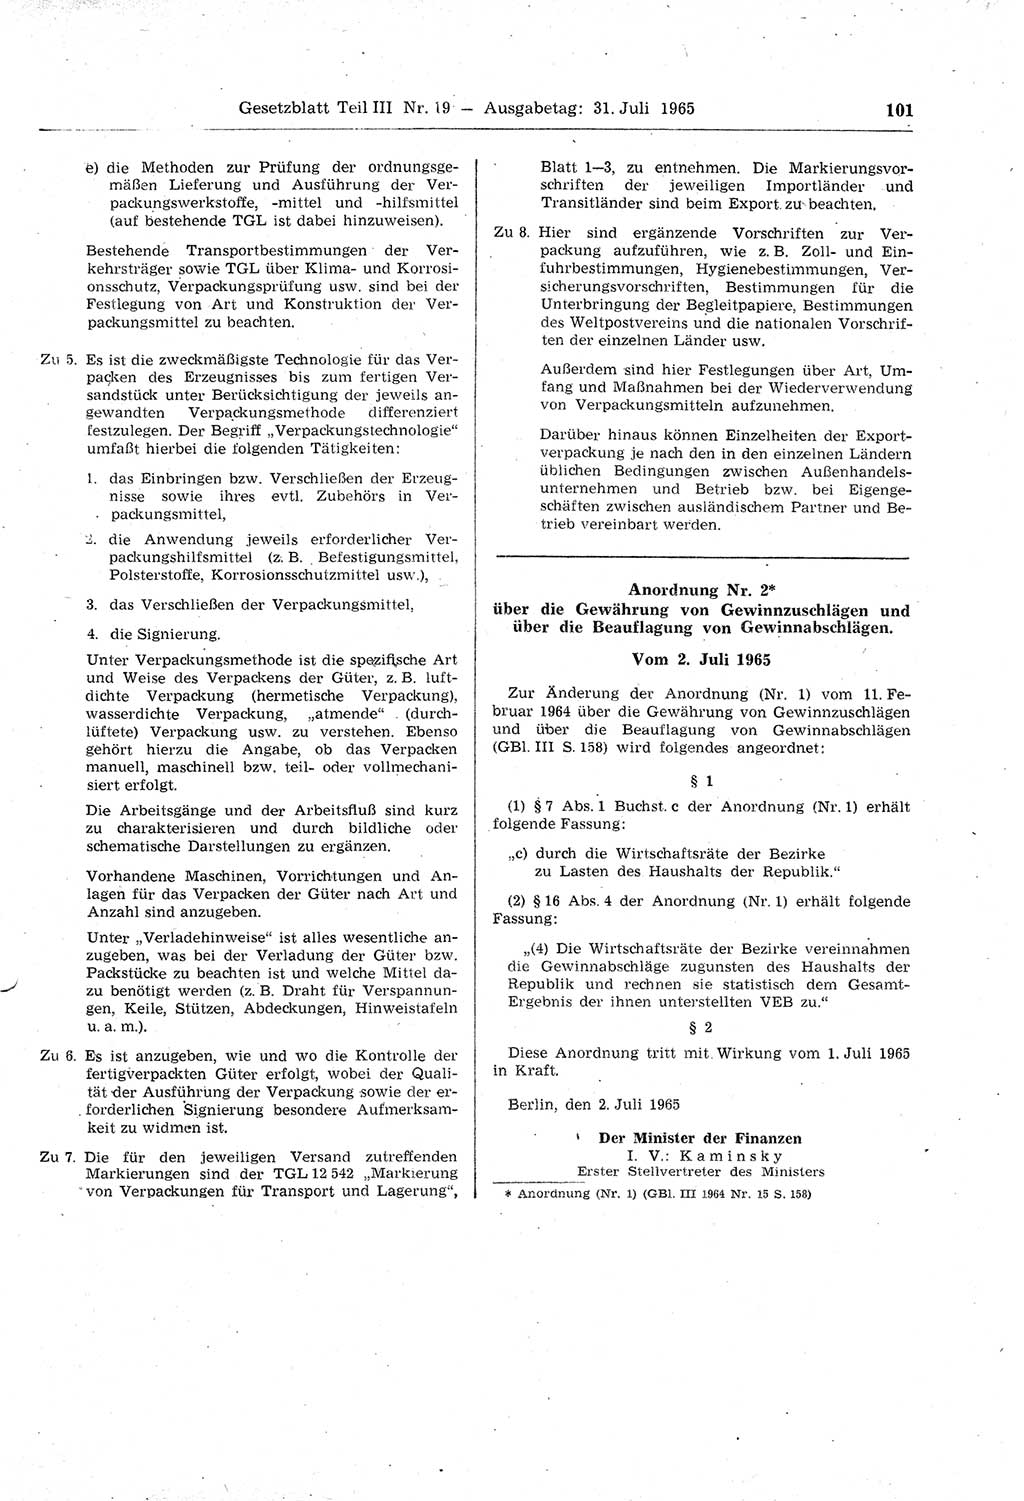 Gesetzblatt (GBl.) der Deutschen Demokratischen Republik (DDR) Teil ⅠⅠⅠ 1965, Seite 101 (GBl. DDR ⅠⅠⅠ 1965, S. 101)